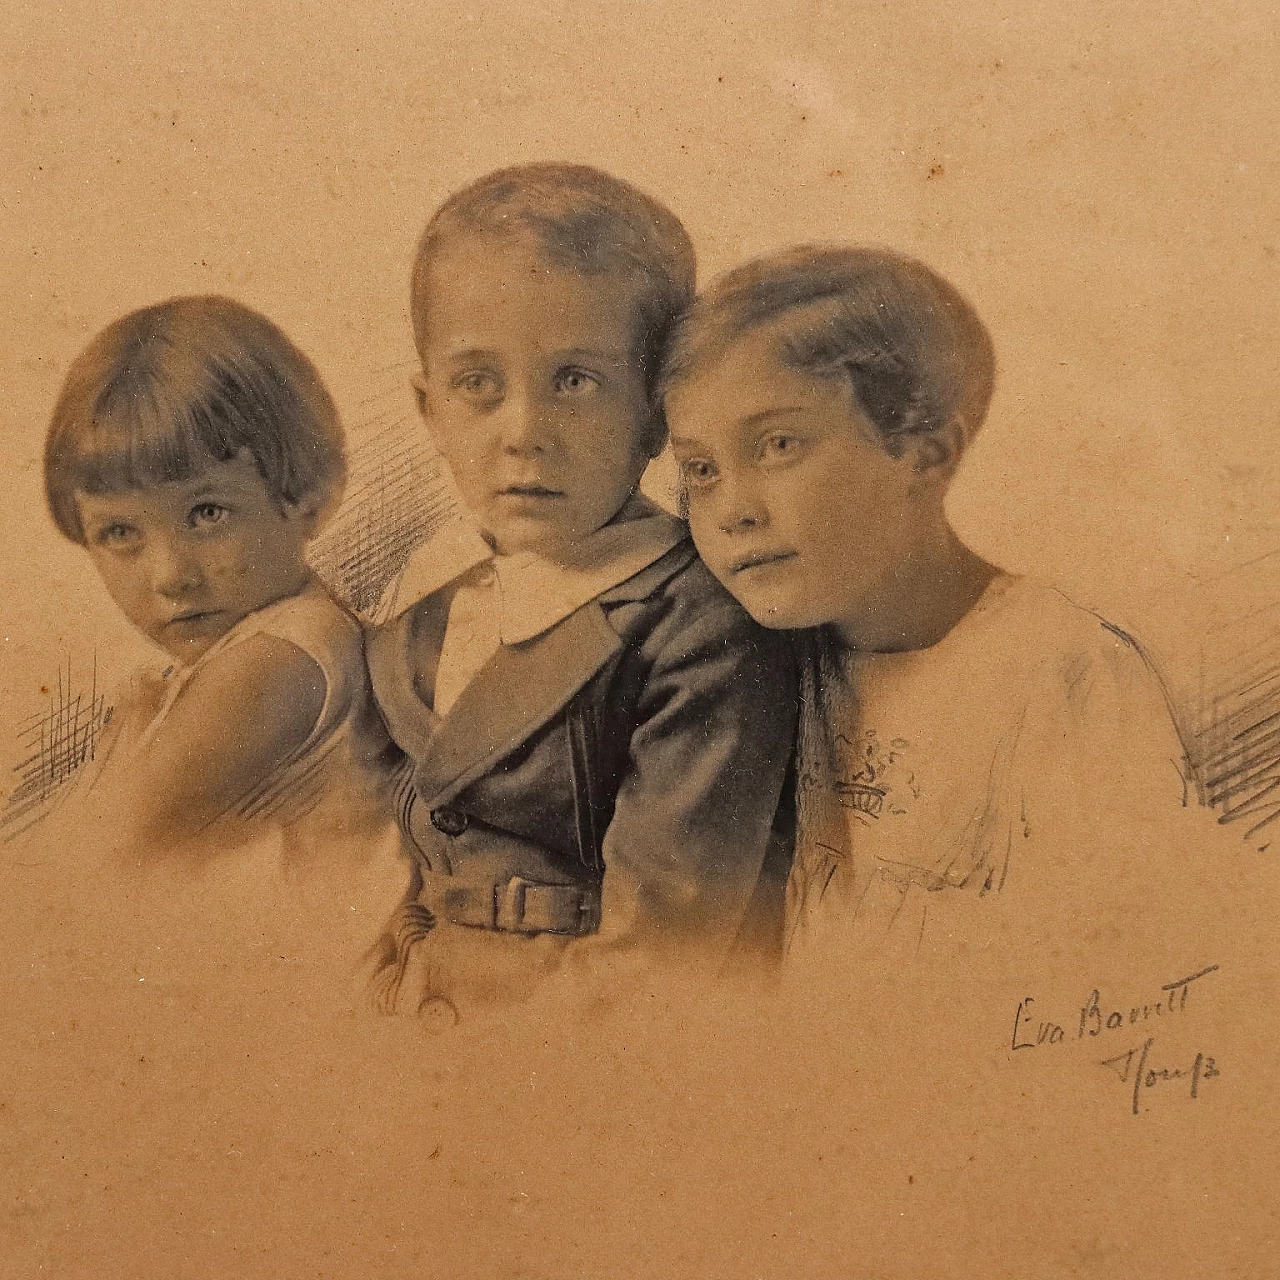 Eva Barrett, 4 portraits of children, photographs, 1930 6